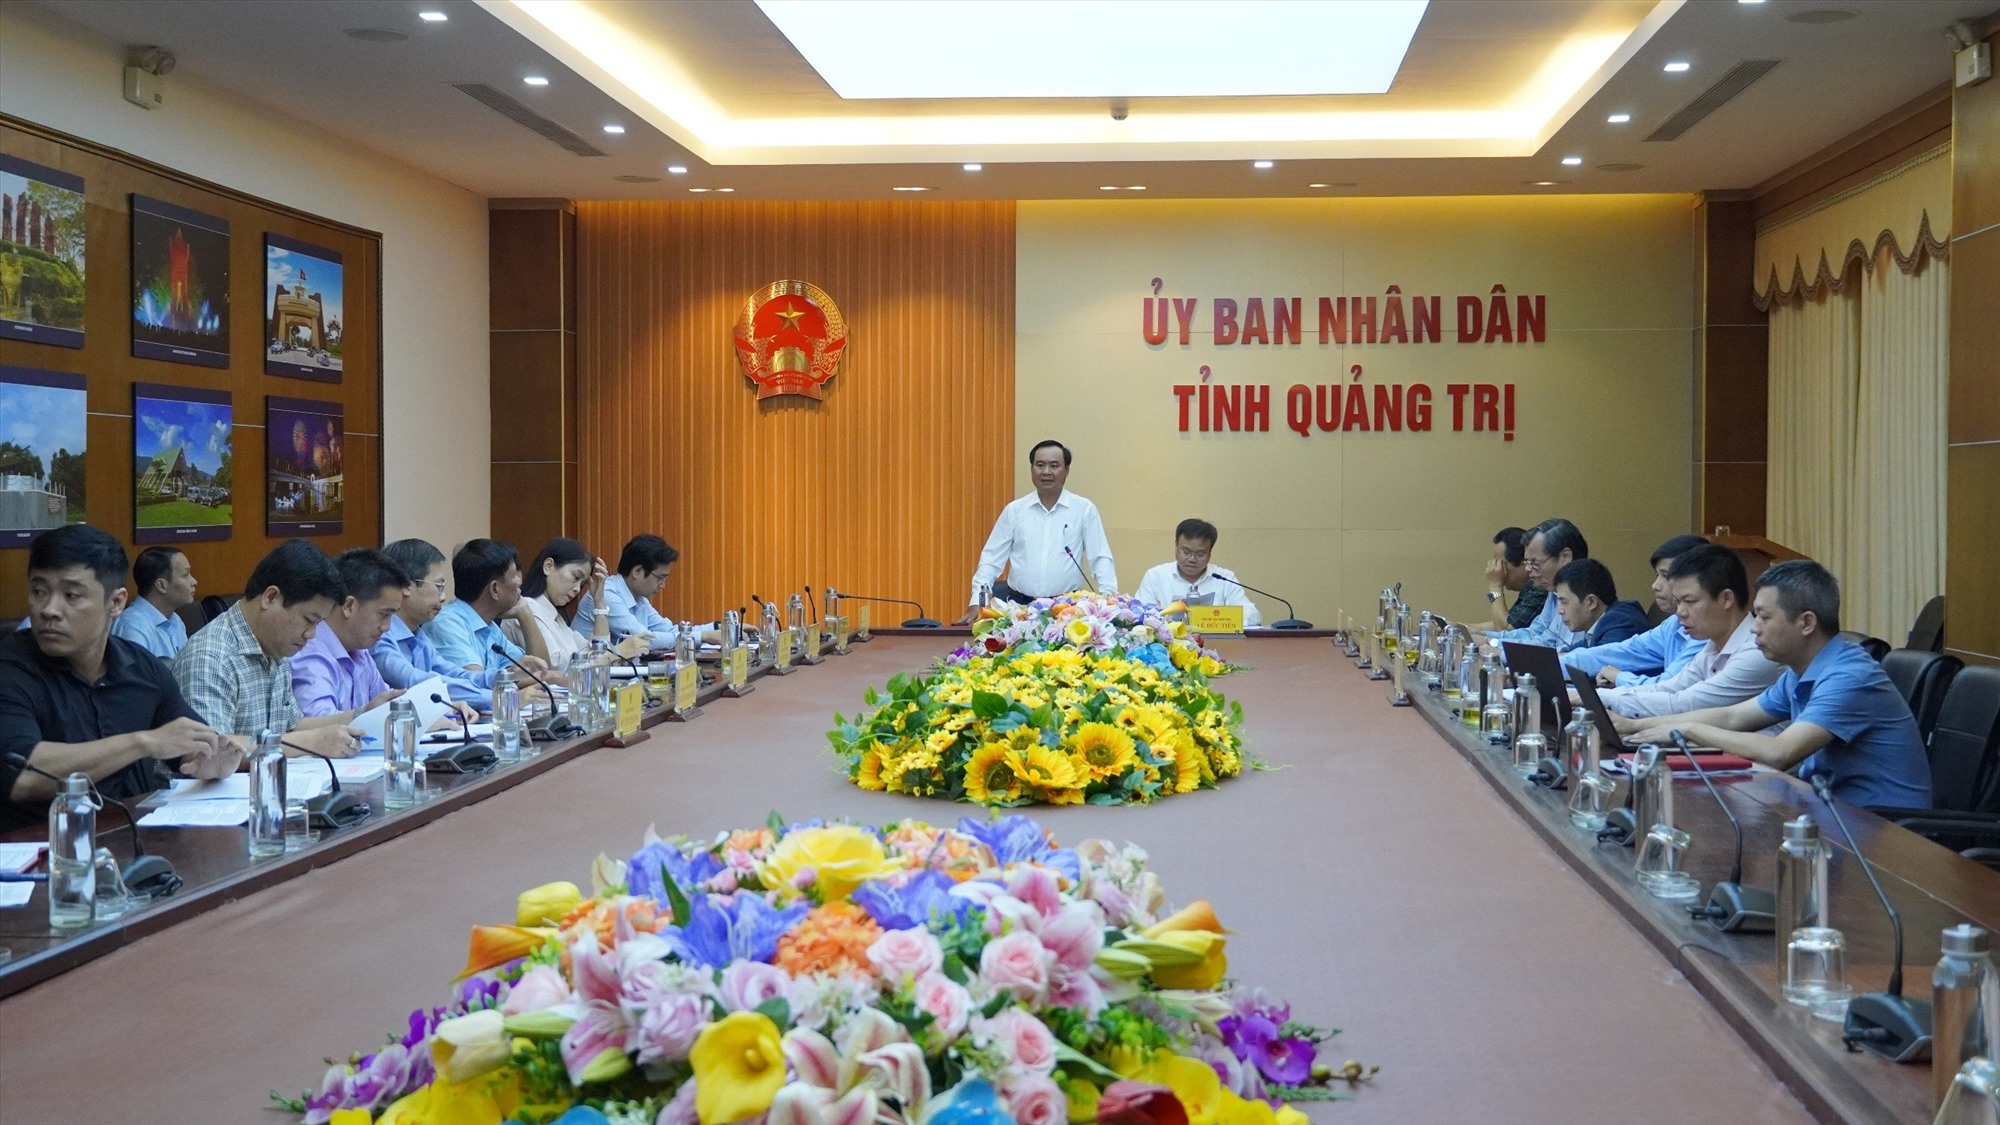 Chủ tịch UBND tỉnh Võ Văn Hưng yêu cầu các thành viên BCĐ tập trung tháo gỡ vướng mắc để sớm khởi công Dự án Cảng hàng không Quảng Trị - Ảnh: T.T